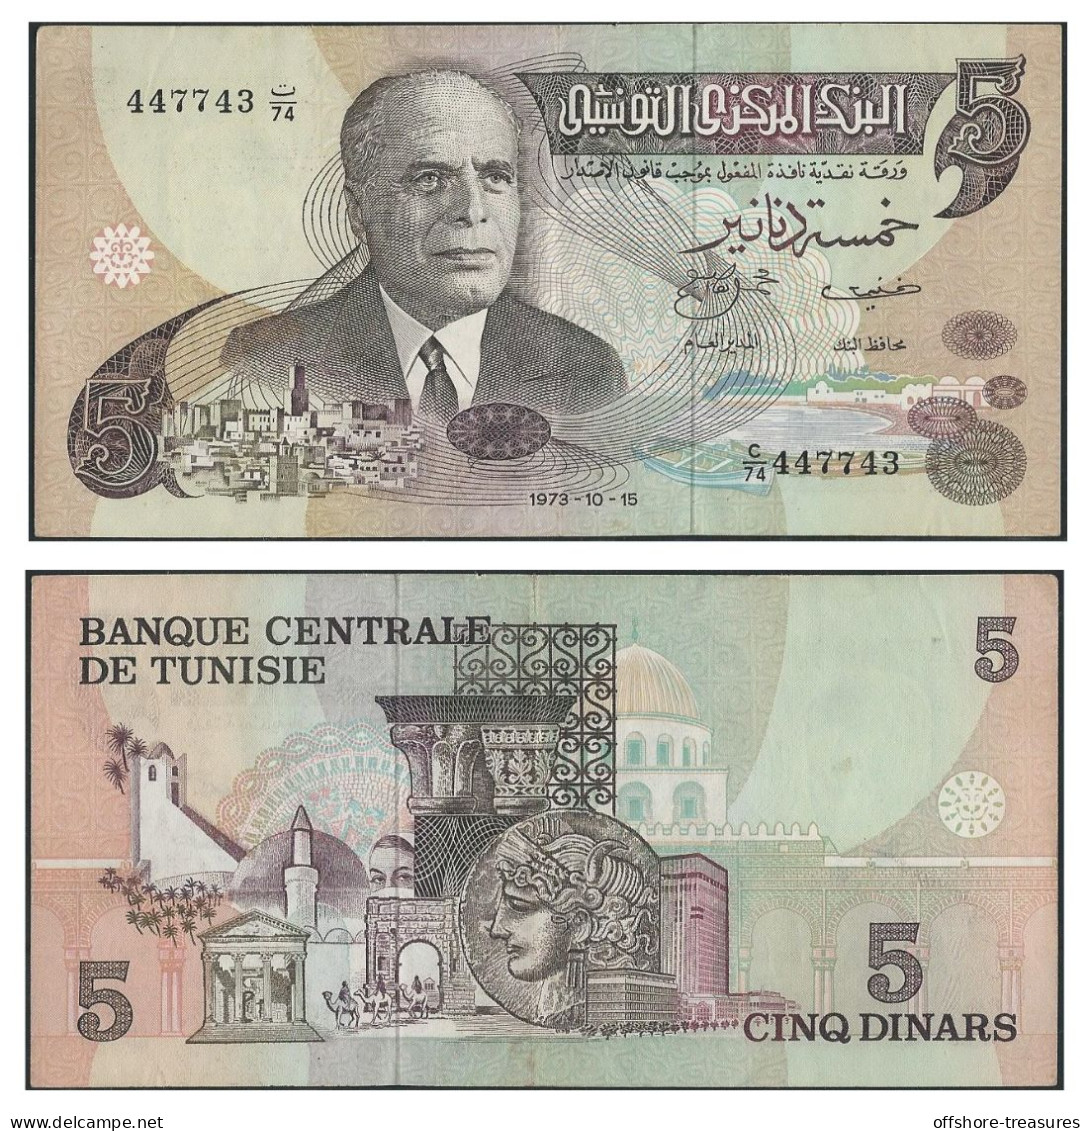 TUNISIA CENTRAL BANK FIVE DINAR 1973 BANKNOTE - TUNISIE BILLET 5 DINARS - TUNIS - Tunisia